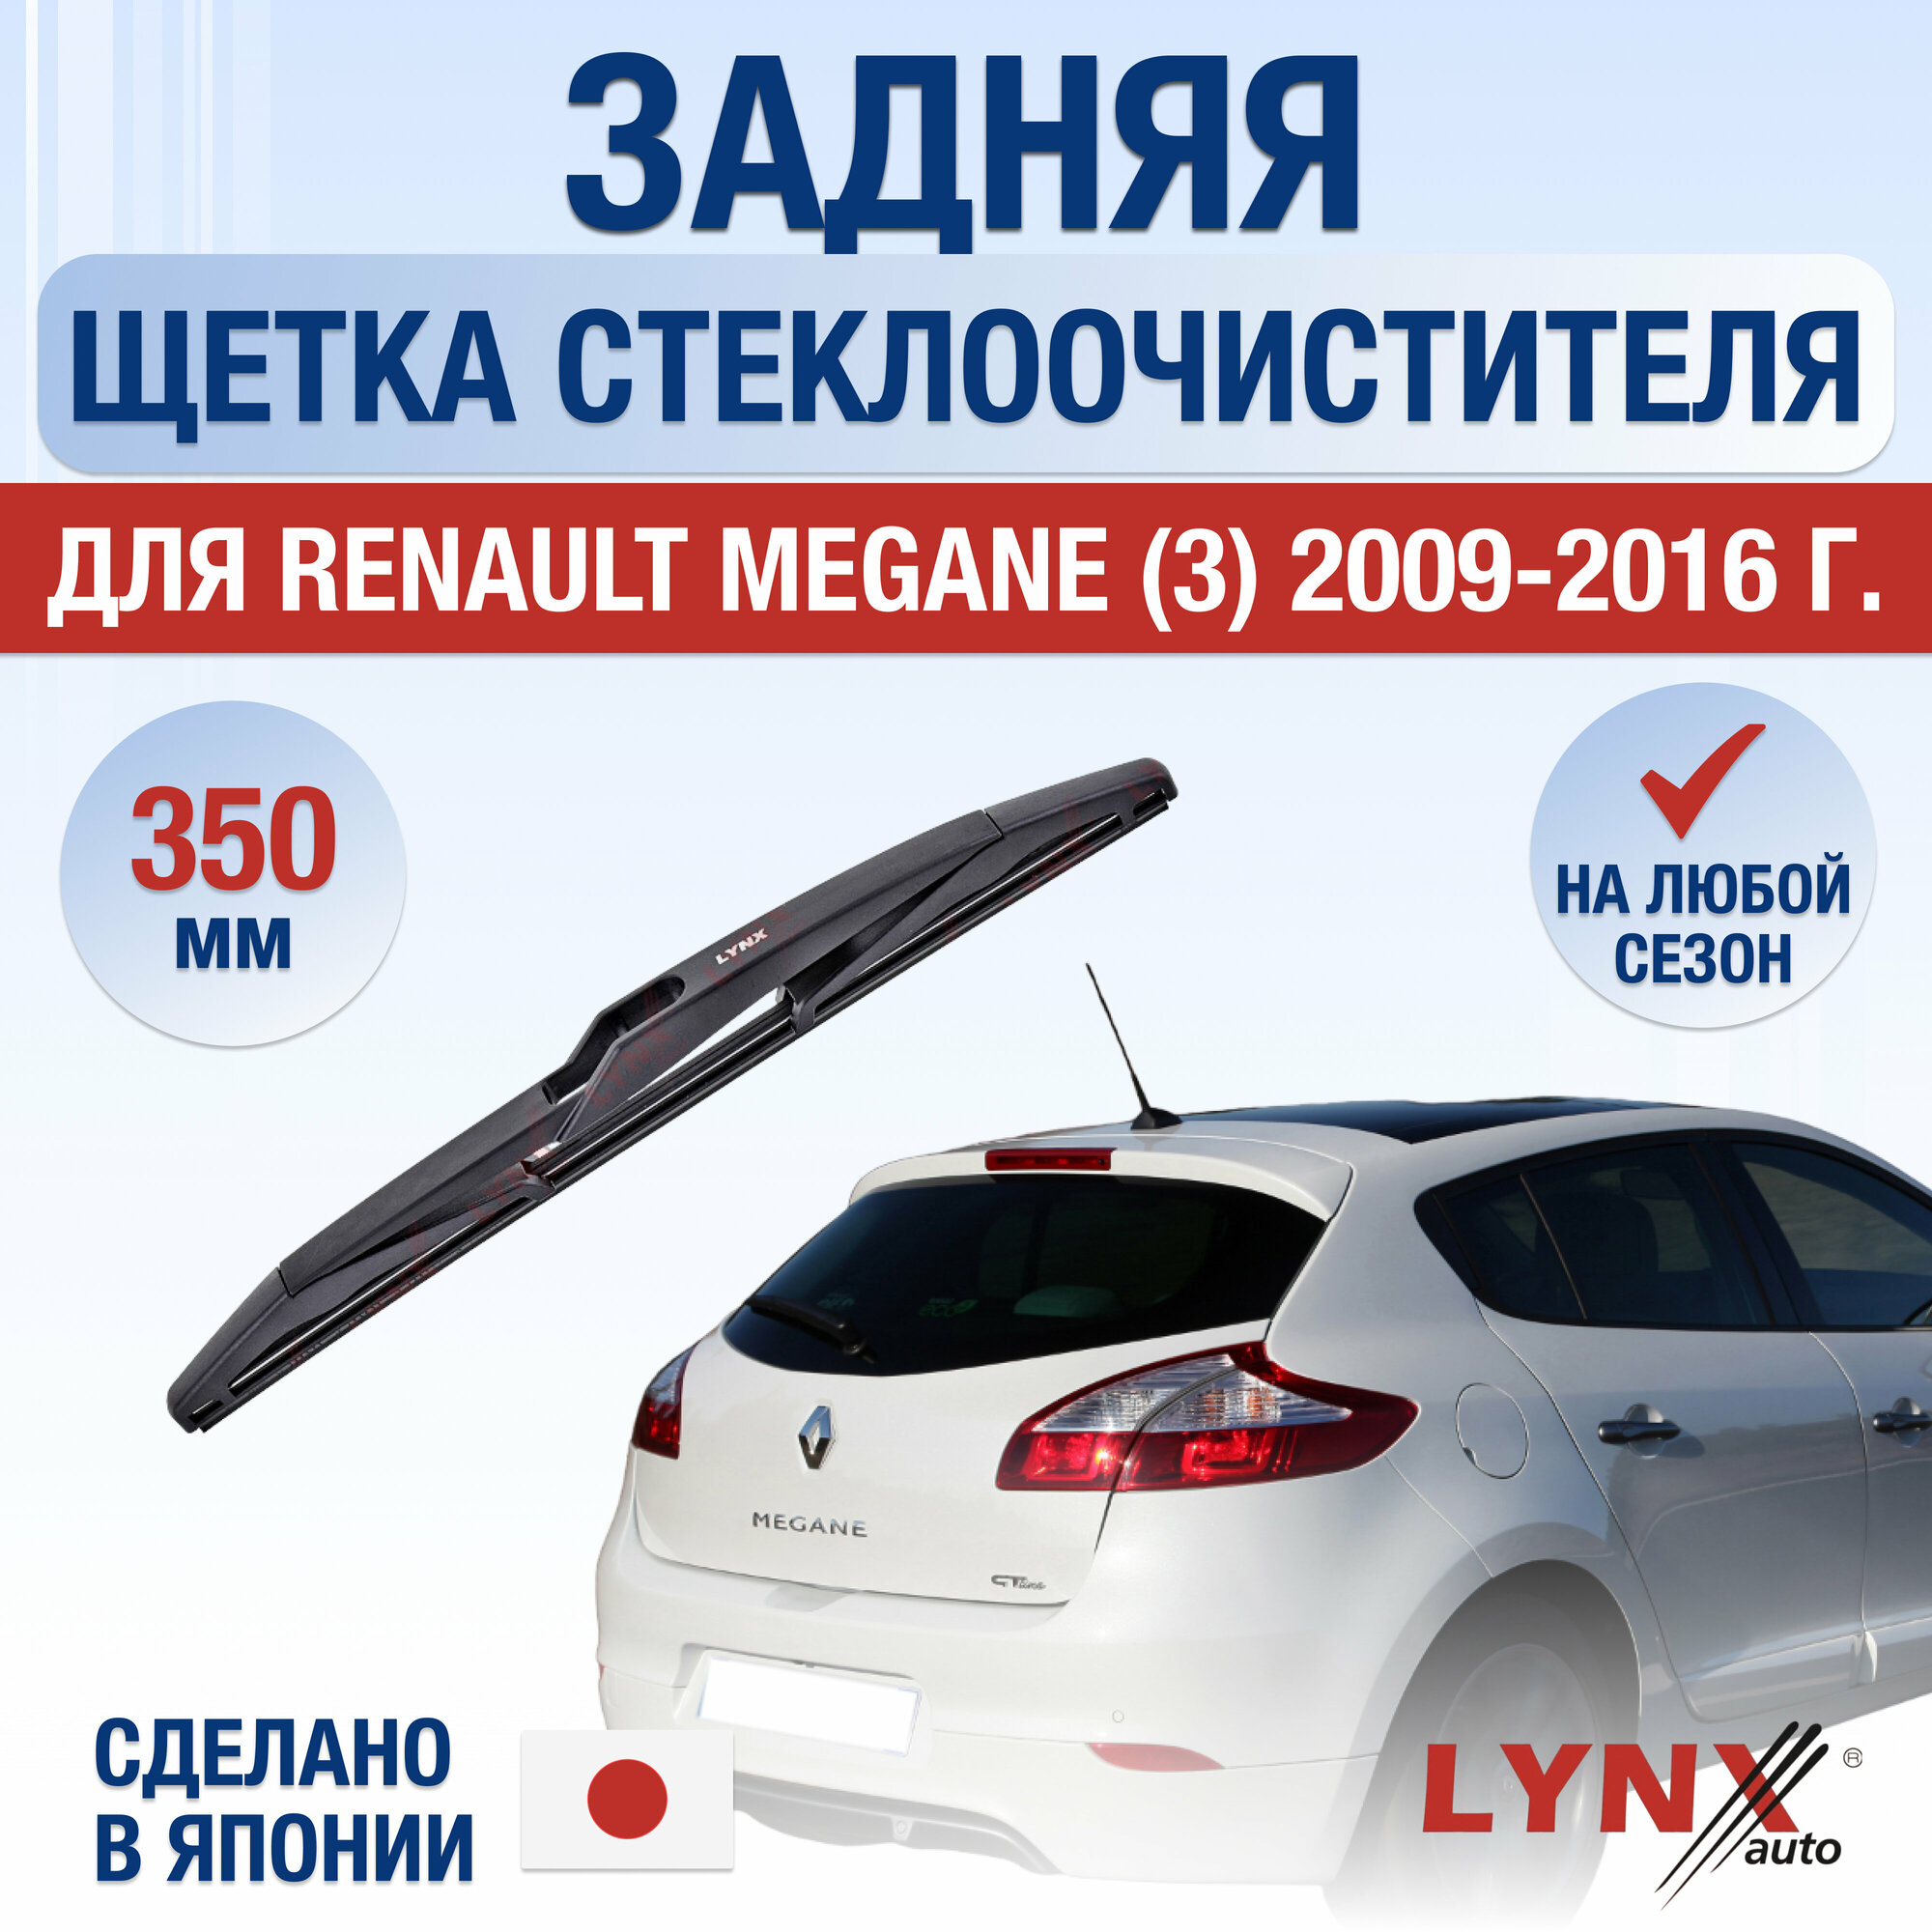 Задняя щетка стеклоочистителя для Renault Megane (3) / 2009 2010 2011 2012 2013 2014 2015 2016 / Задний дворник 350 мм Рено Меган